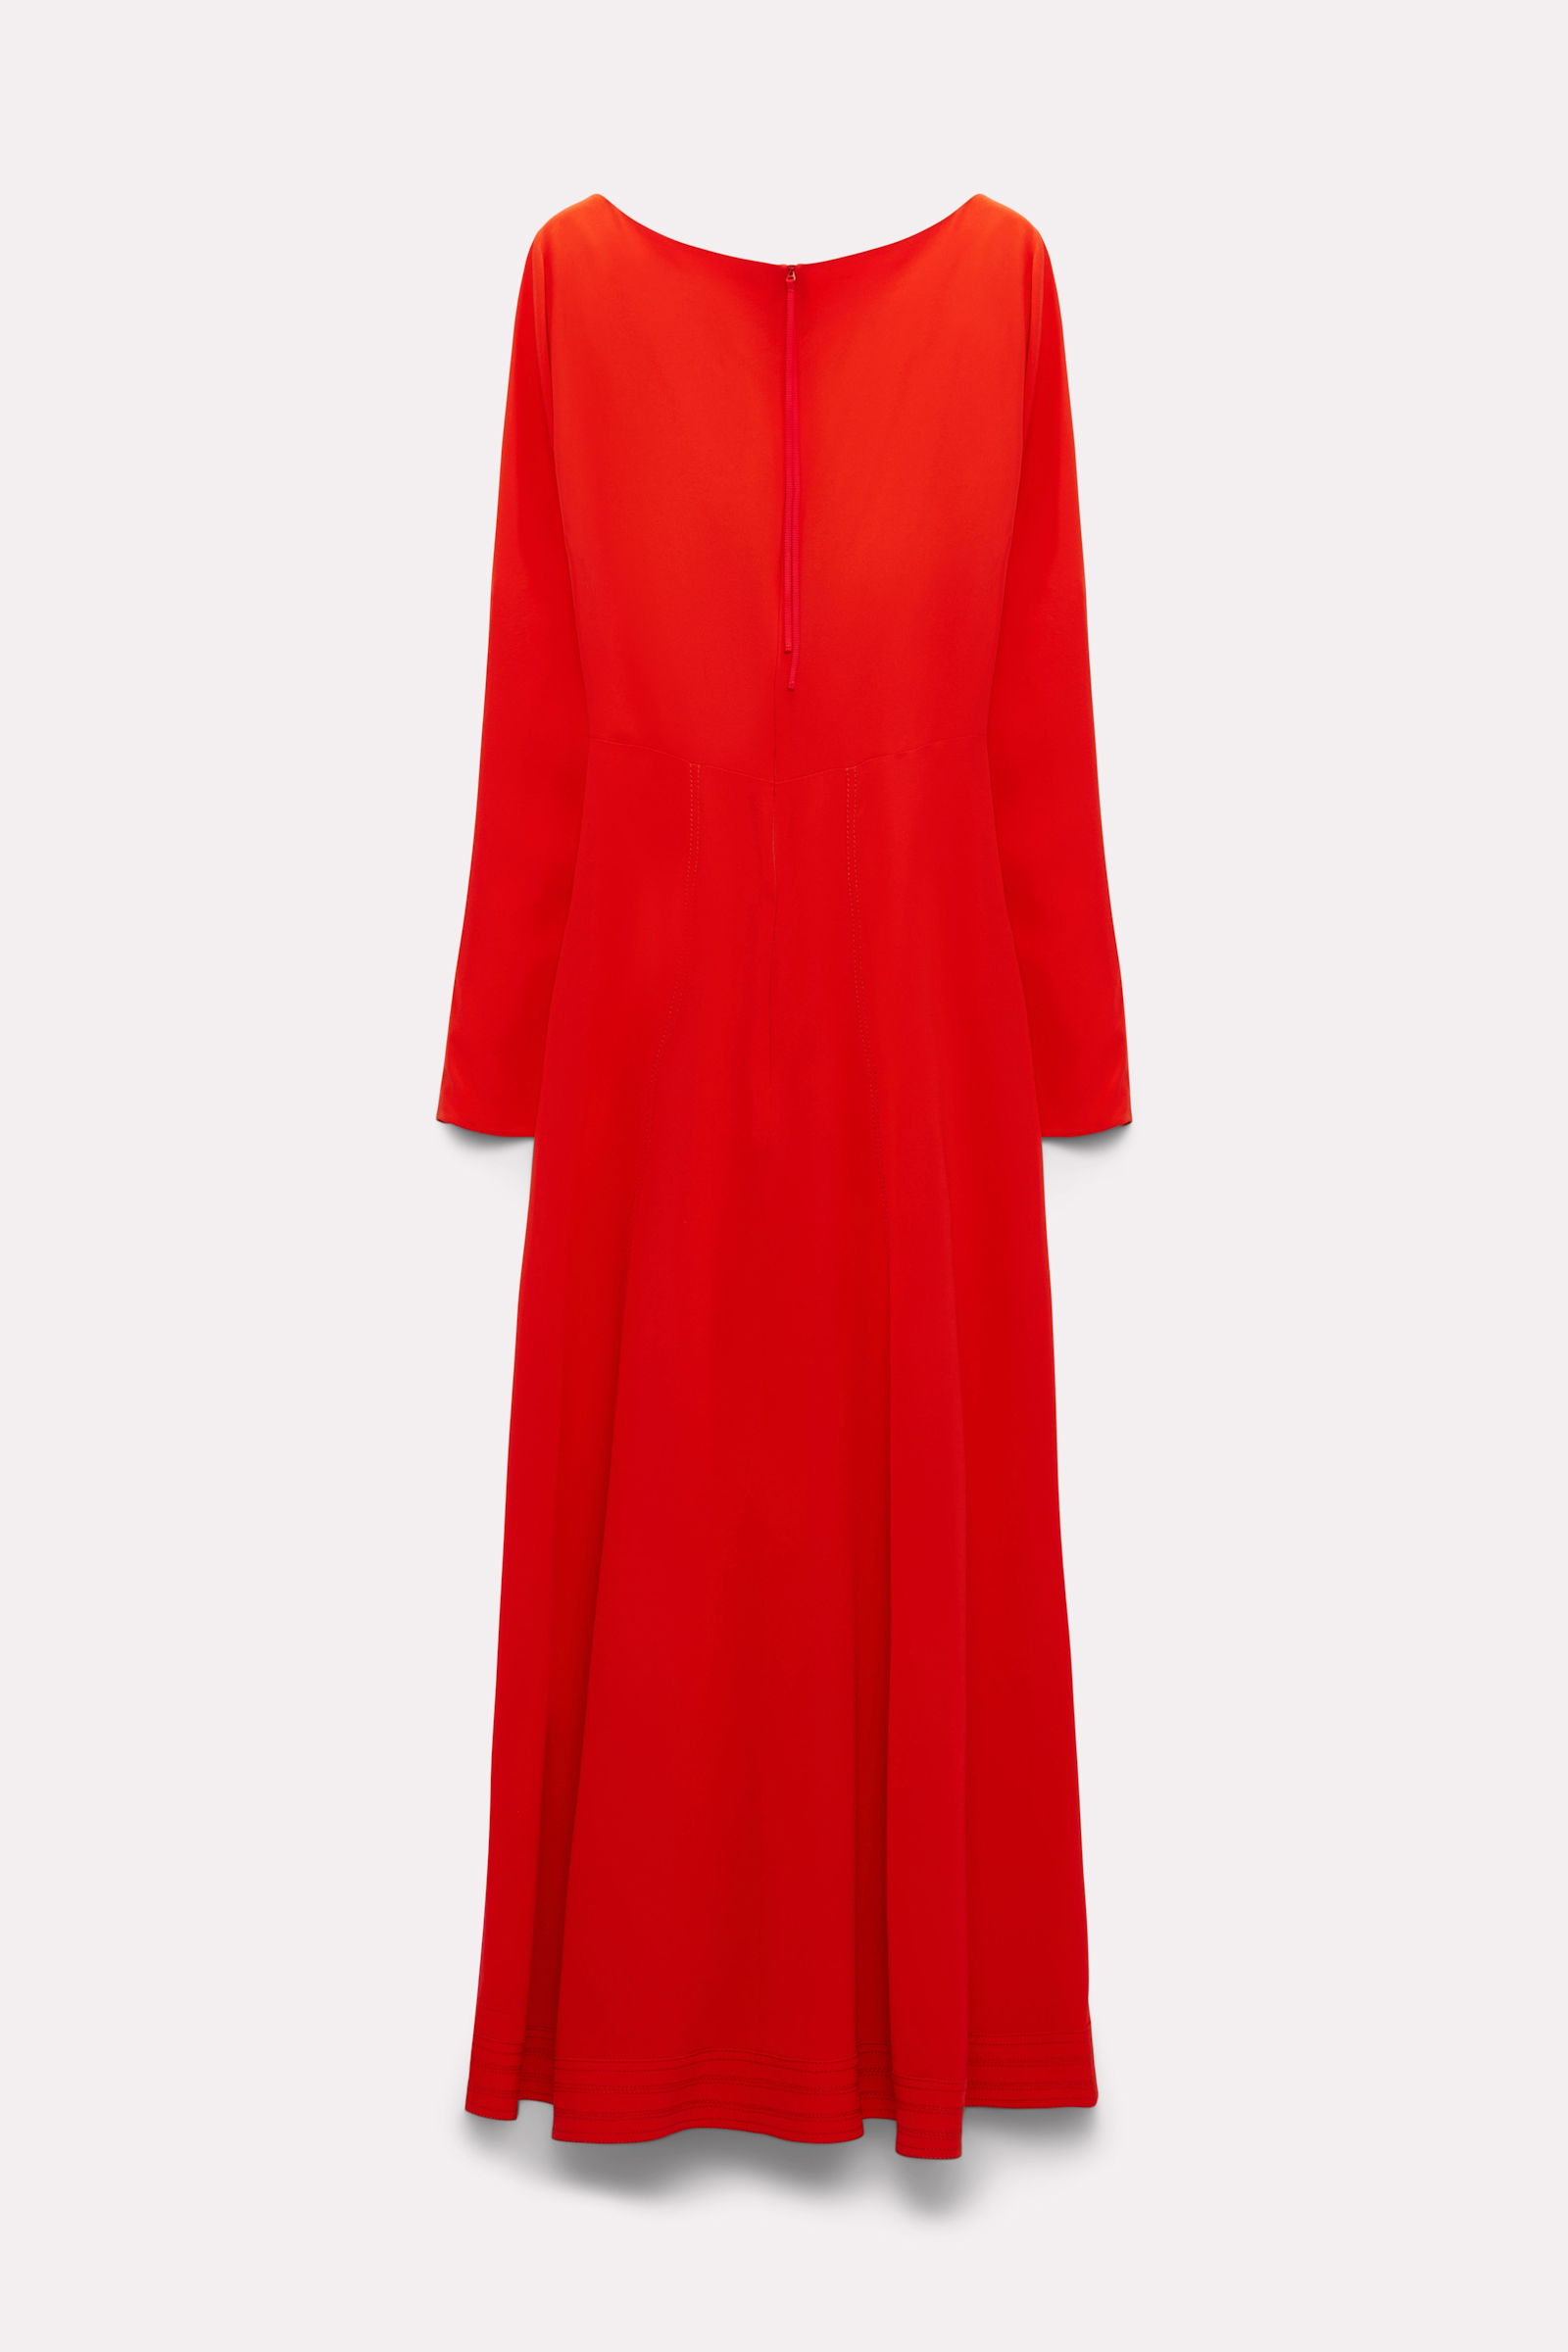 Dorothee Schumacher Seidenkleid mit geschlitzter Neckline shiny red